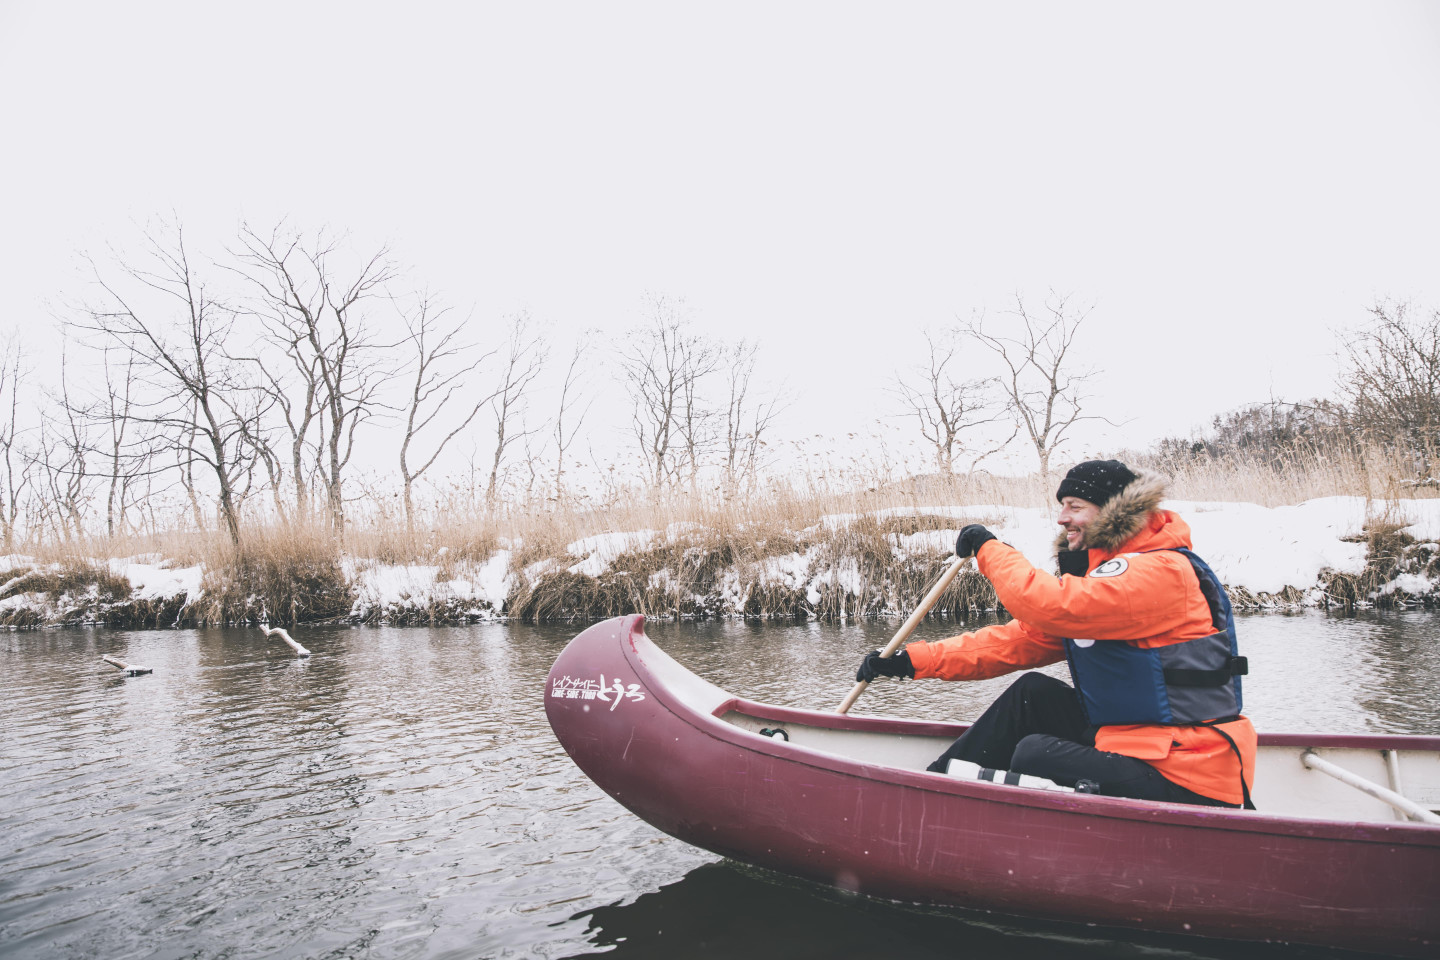 2.乘坐加拿大独木舟在冬季的“钏路湿原” 中穿行